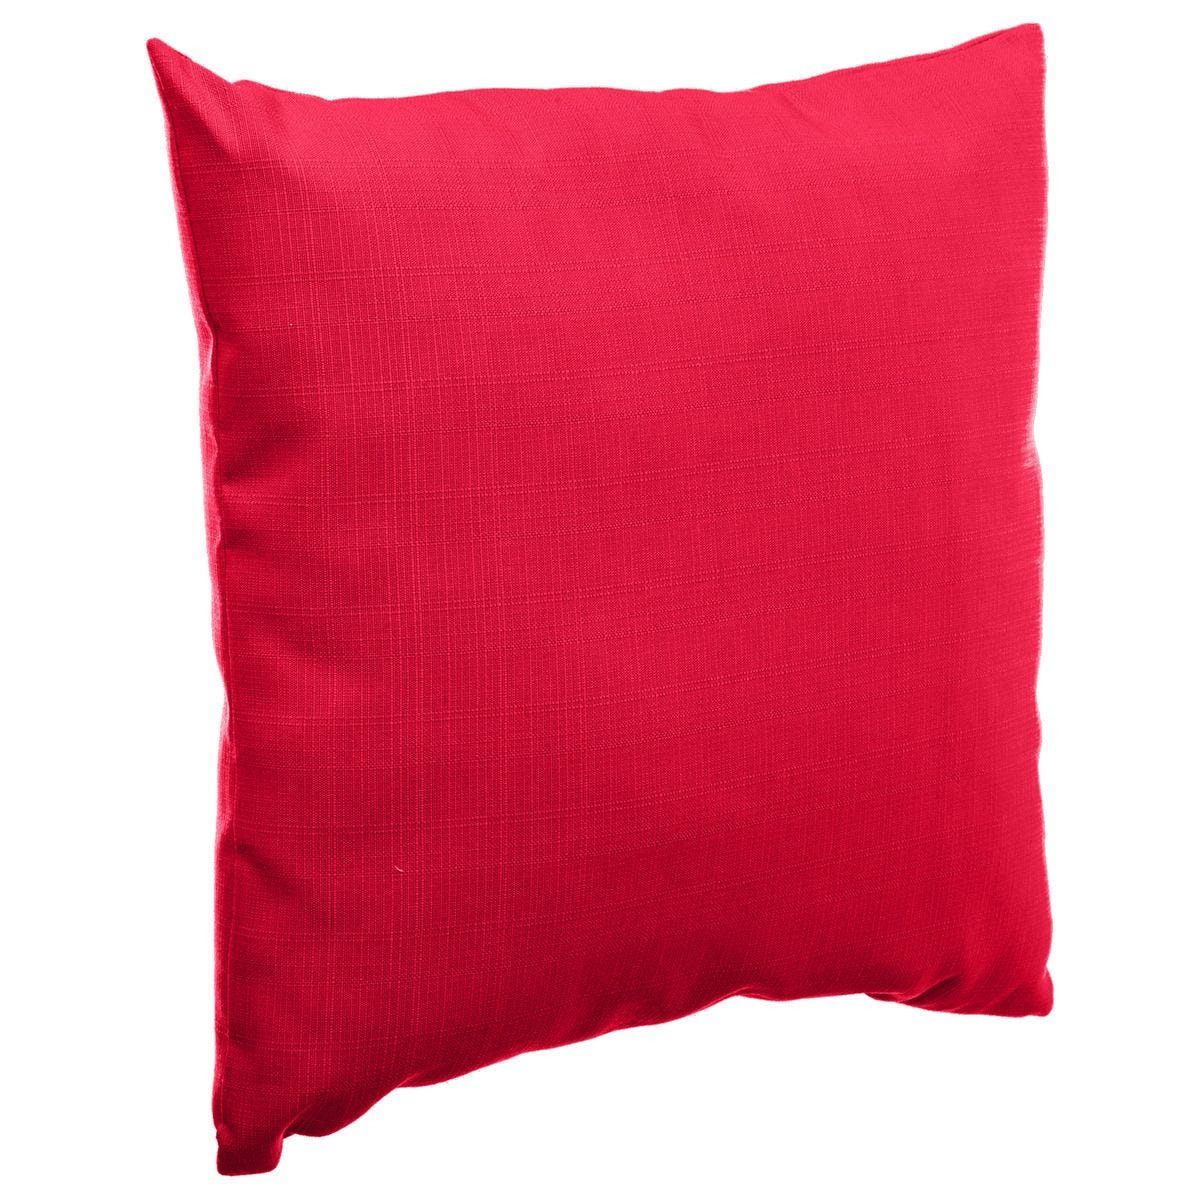 Bank-sier-tuin kussens voor binnen en buiten in de kleur rood 40 x 40 x 10 cm